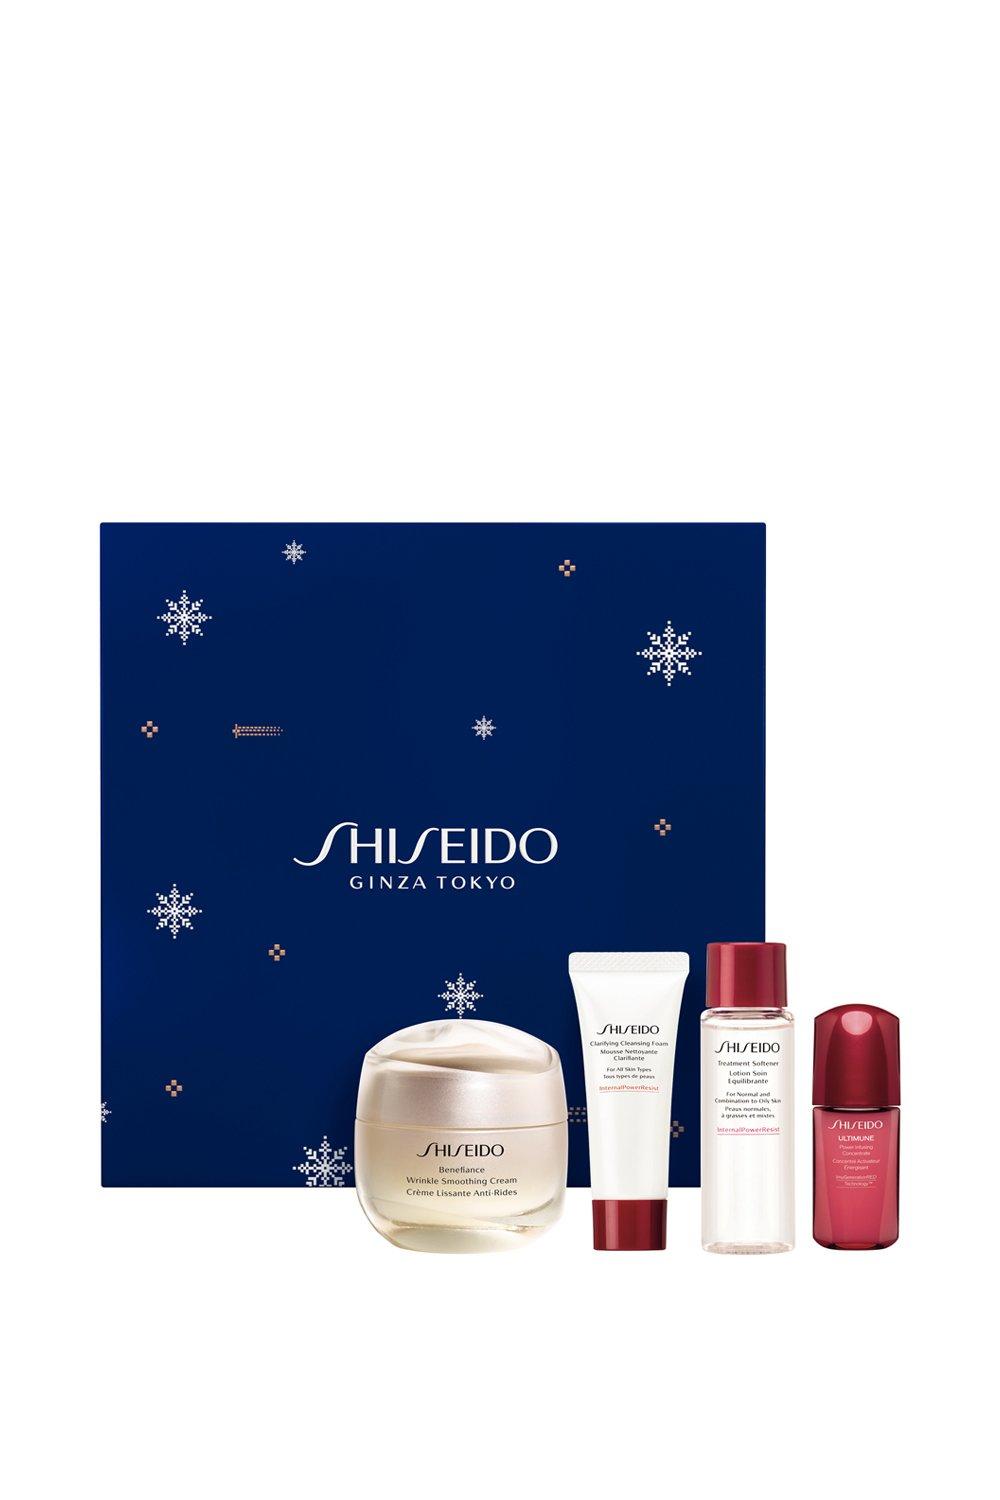 Photos - Cream / Lotion Shiseido Benefiance Holiday Kit 